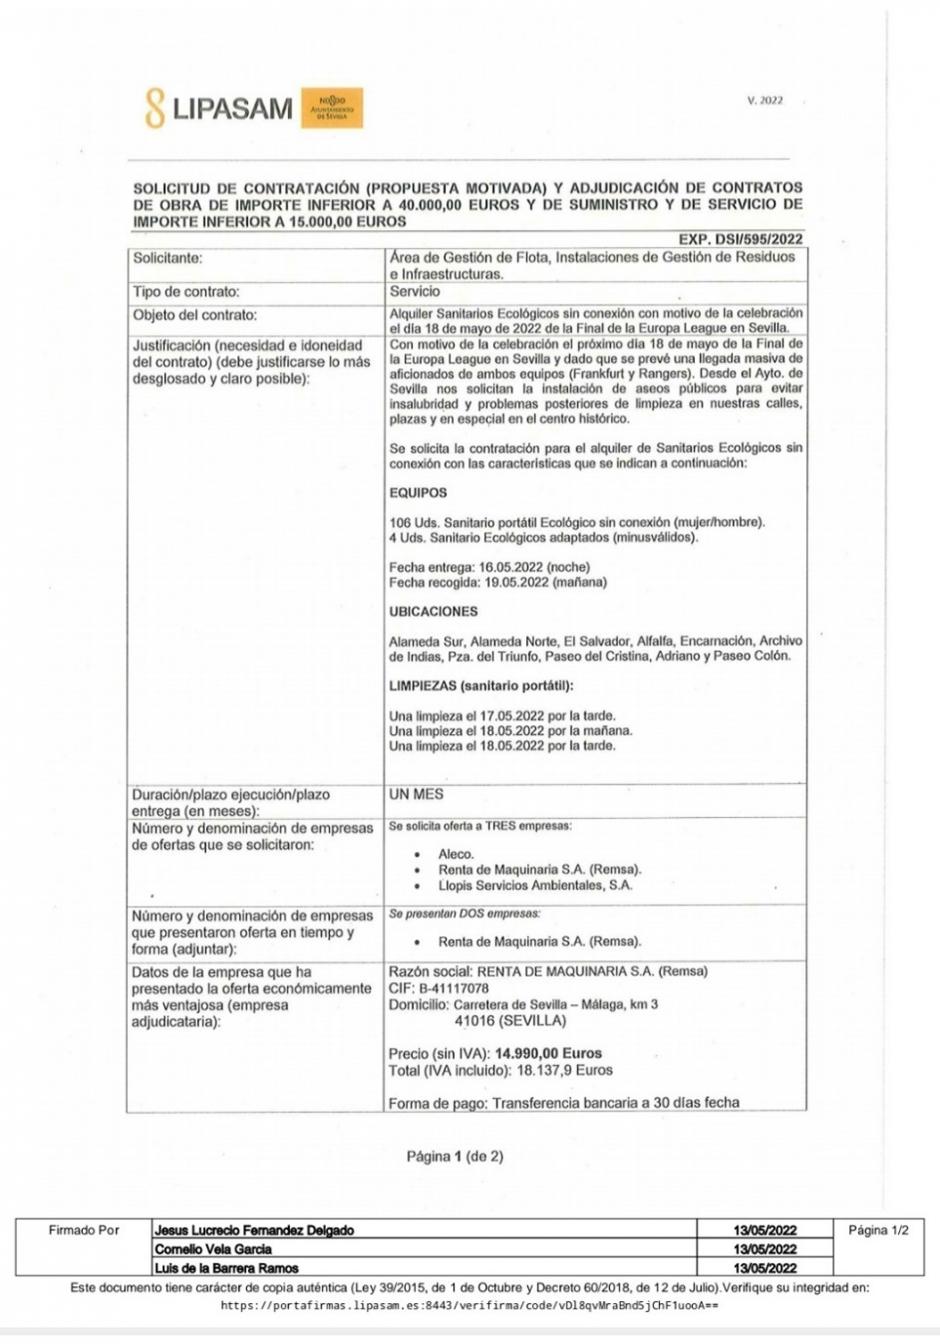 Documento oficial remitido por el Ayuntamiento de Sevilla.